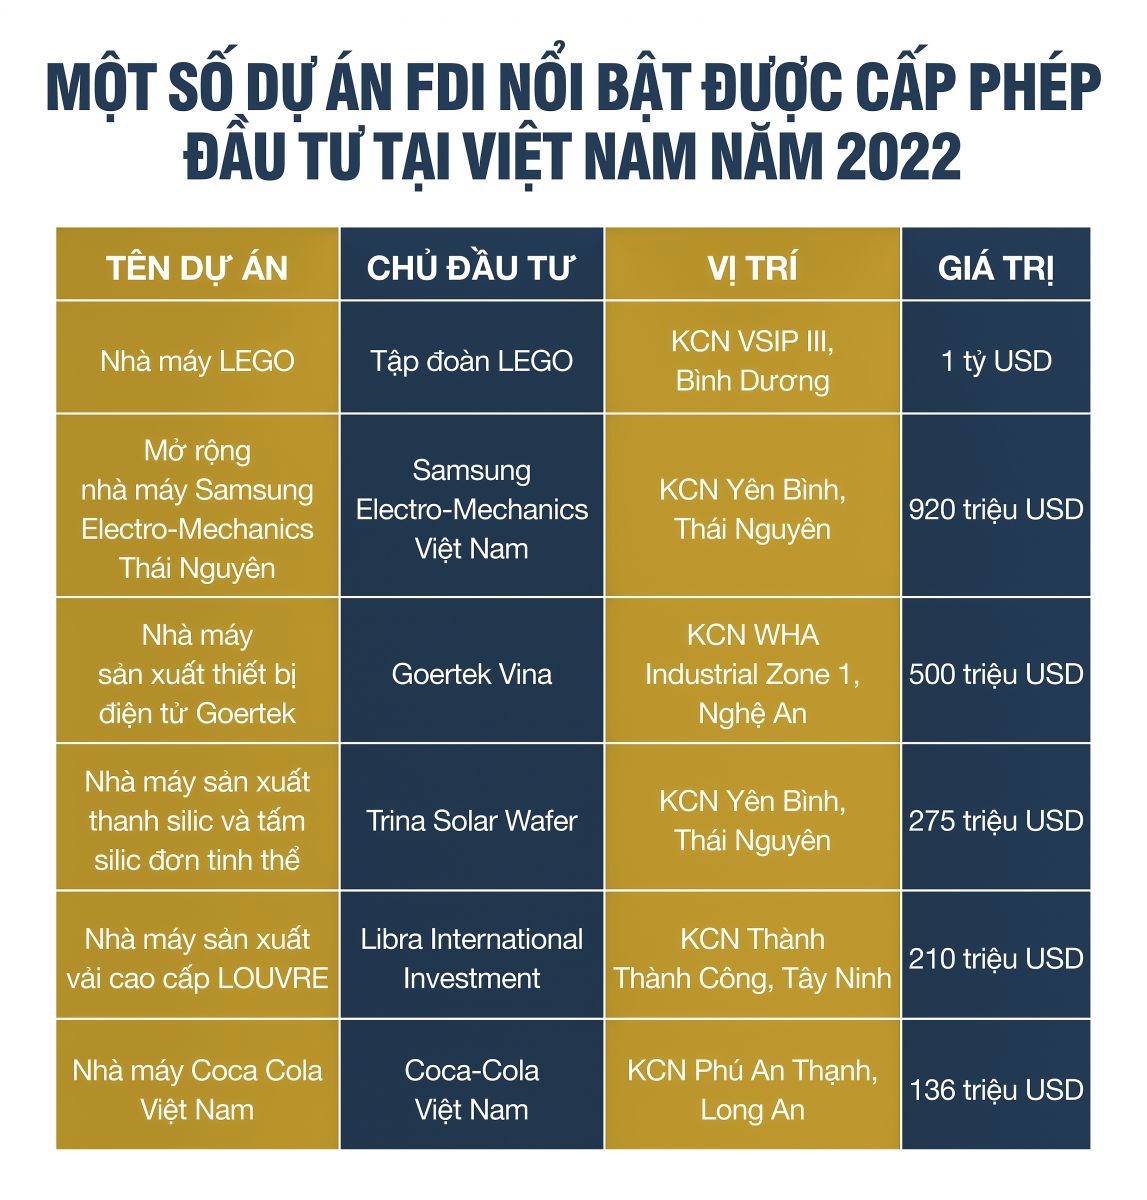 Bất động sản công nghiệp Việt Nam: “Ngôi sao hy vọng“ của thị trường - Ảnh 2